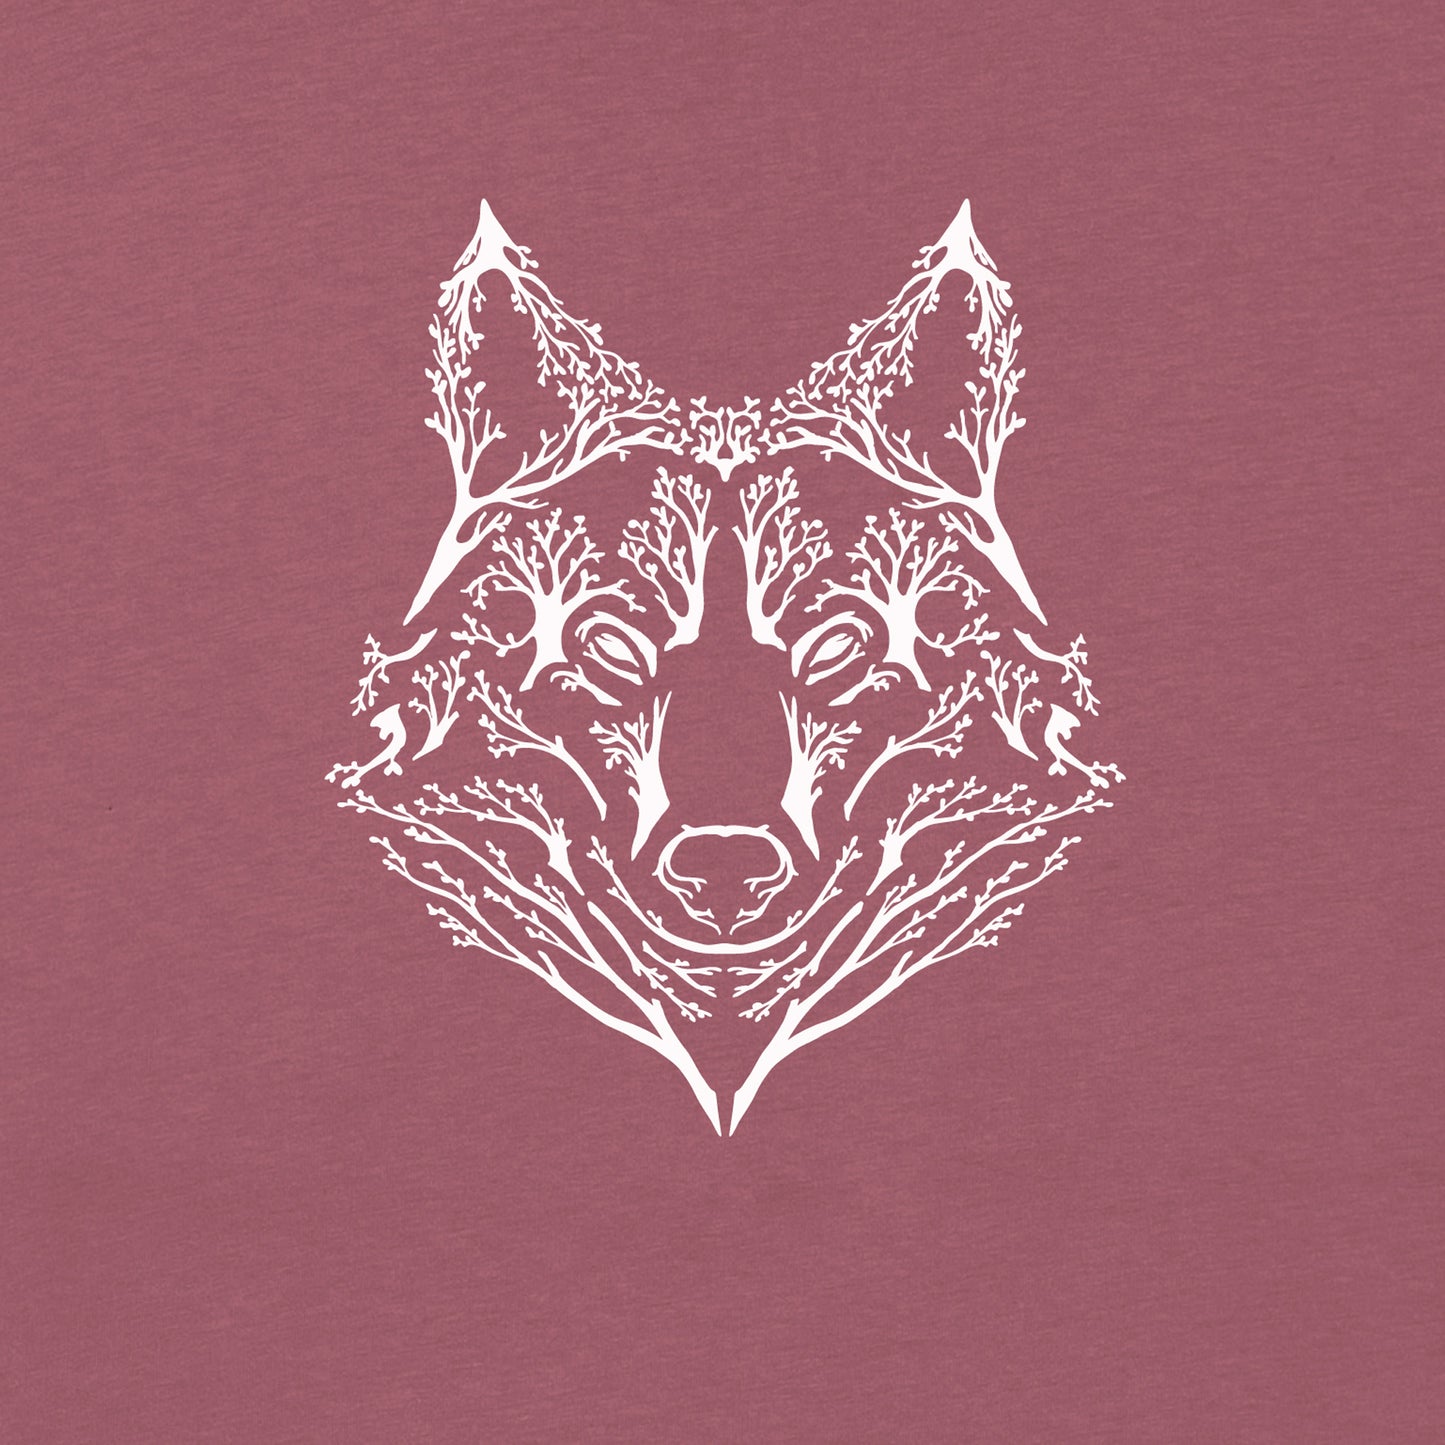 De Wolf T-shirt